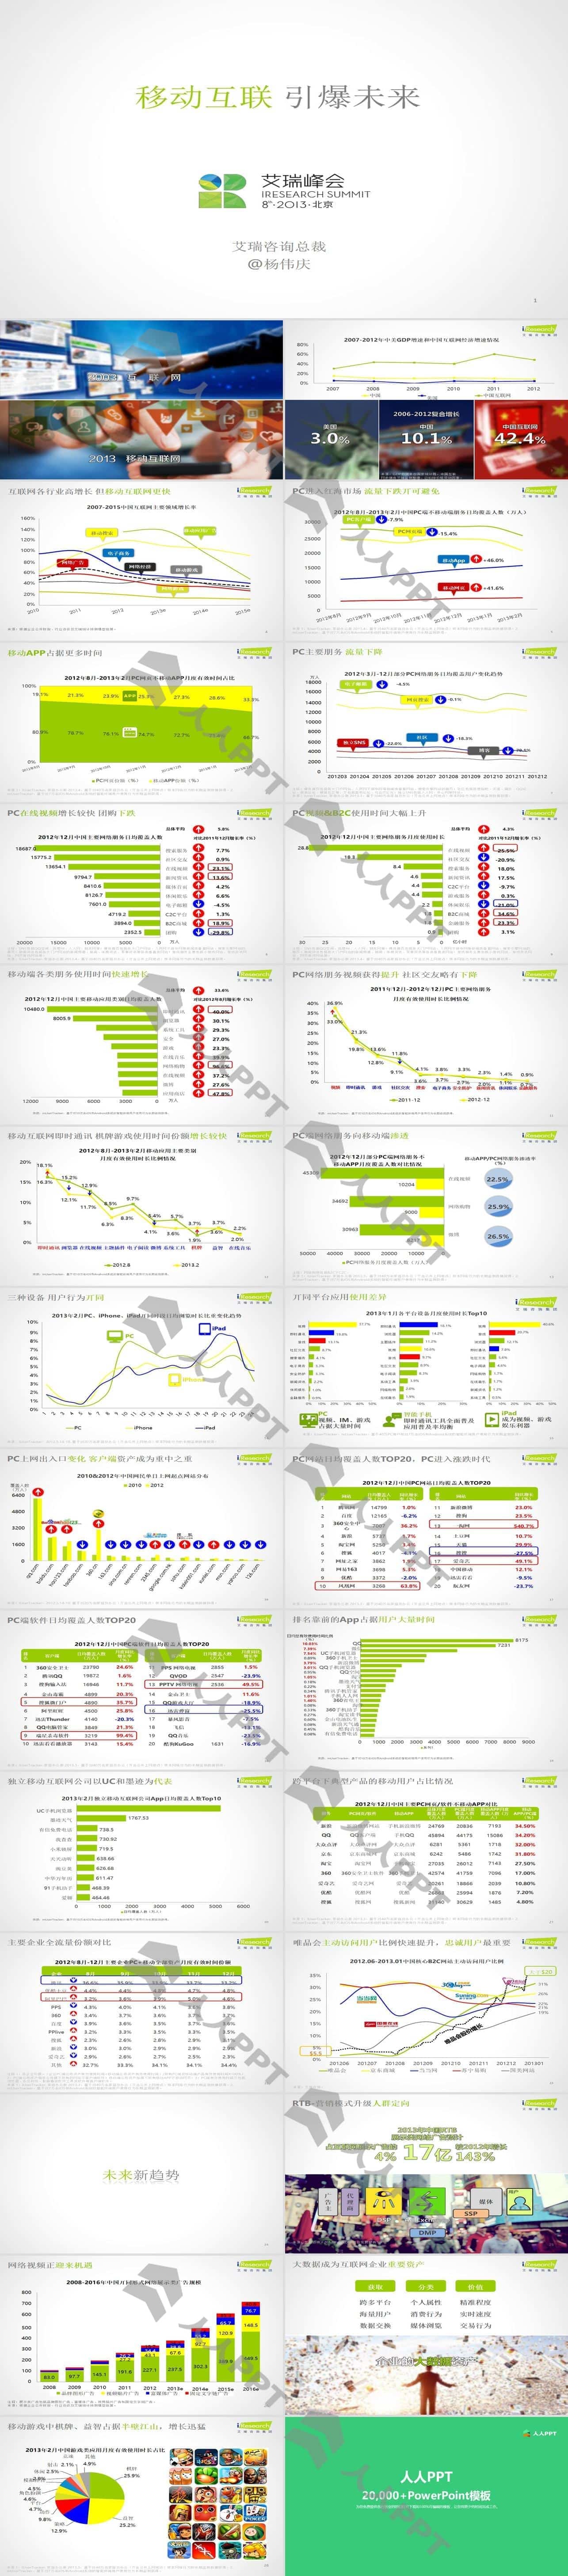 移动互联引爆未来――2013移动互联分析报告PPT模板长图